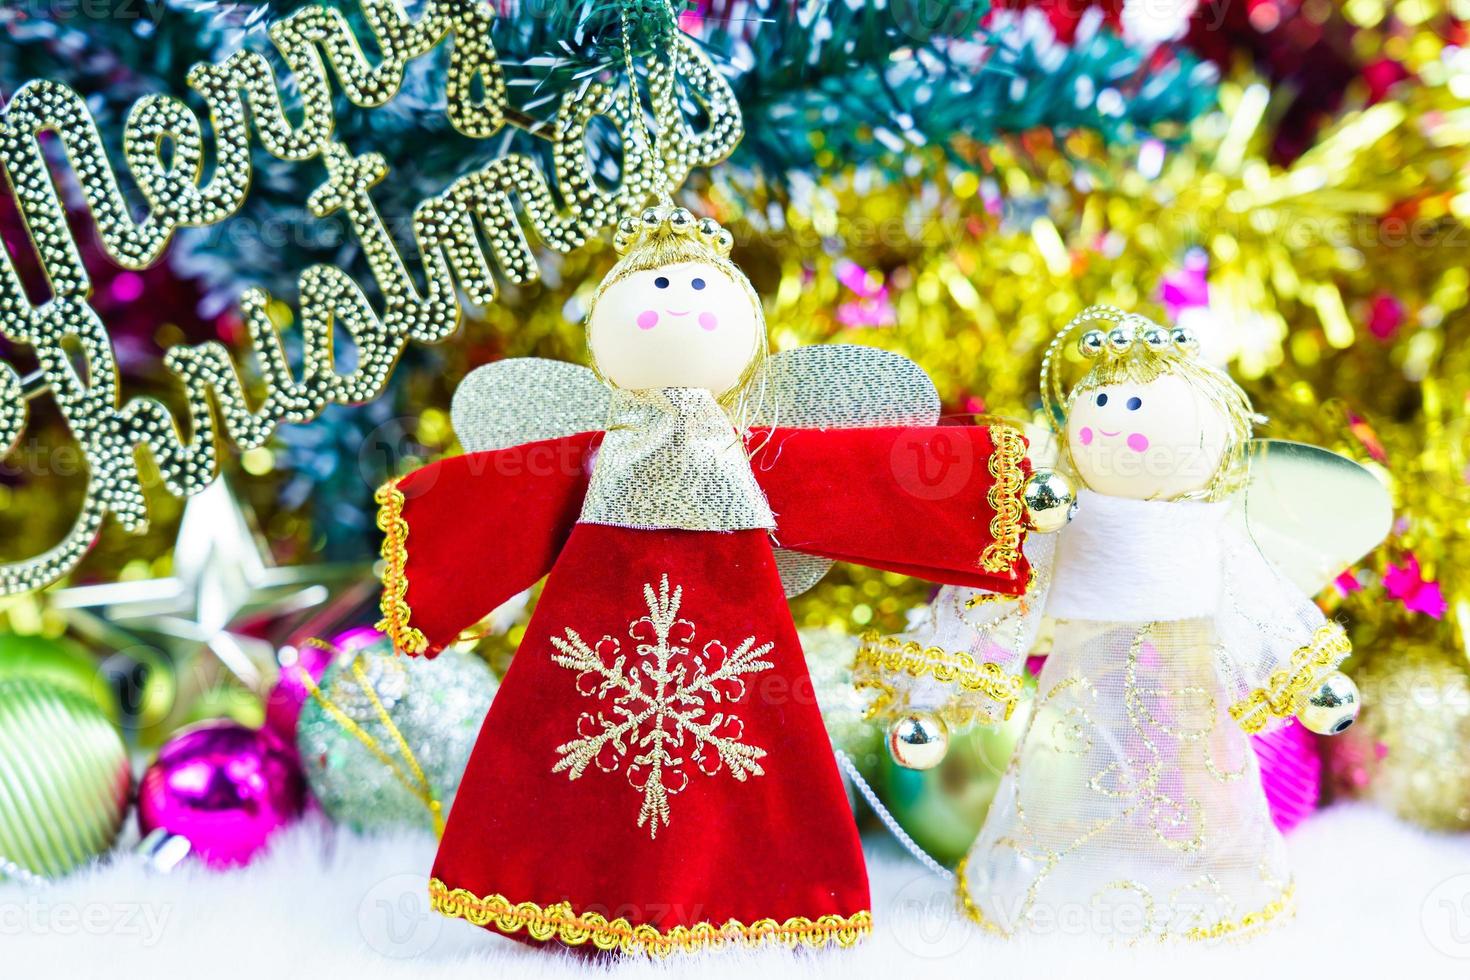 boneca de natal com enfeites e decorações de natal foto